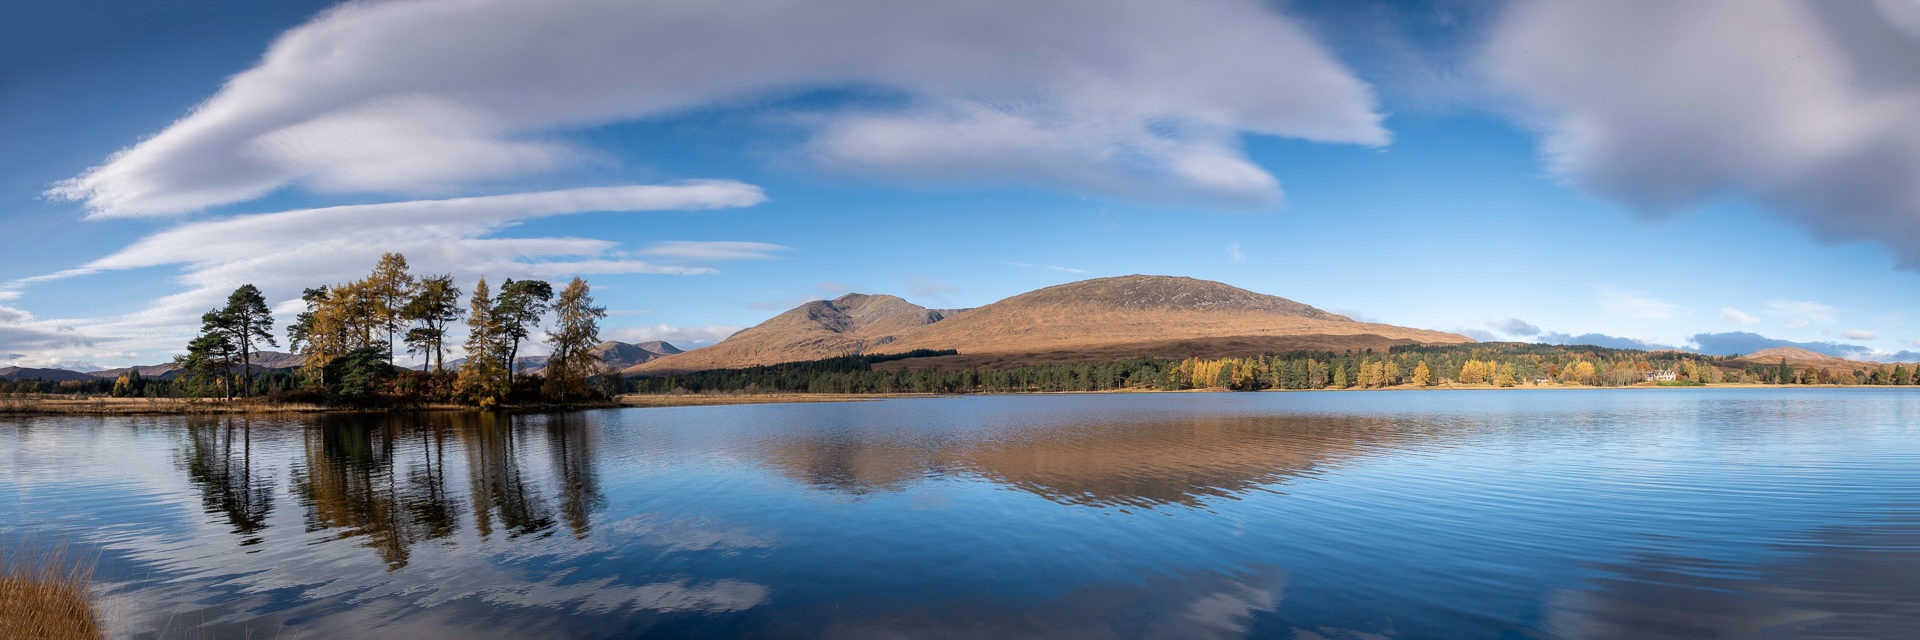 4.11.2021 - Loch Tulla